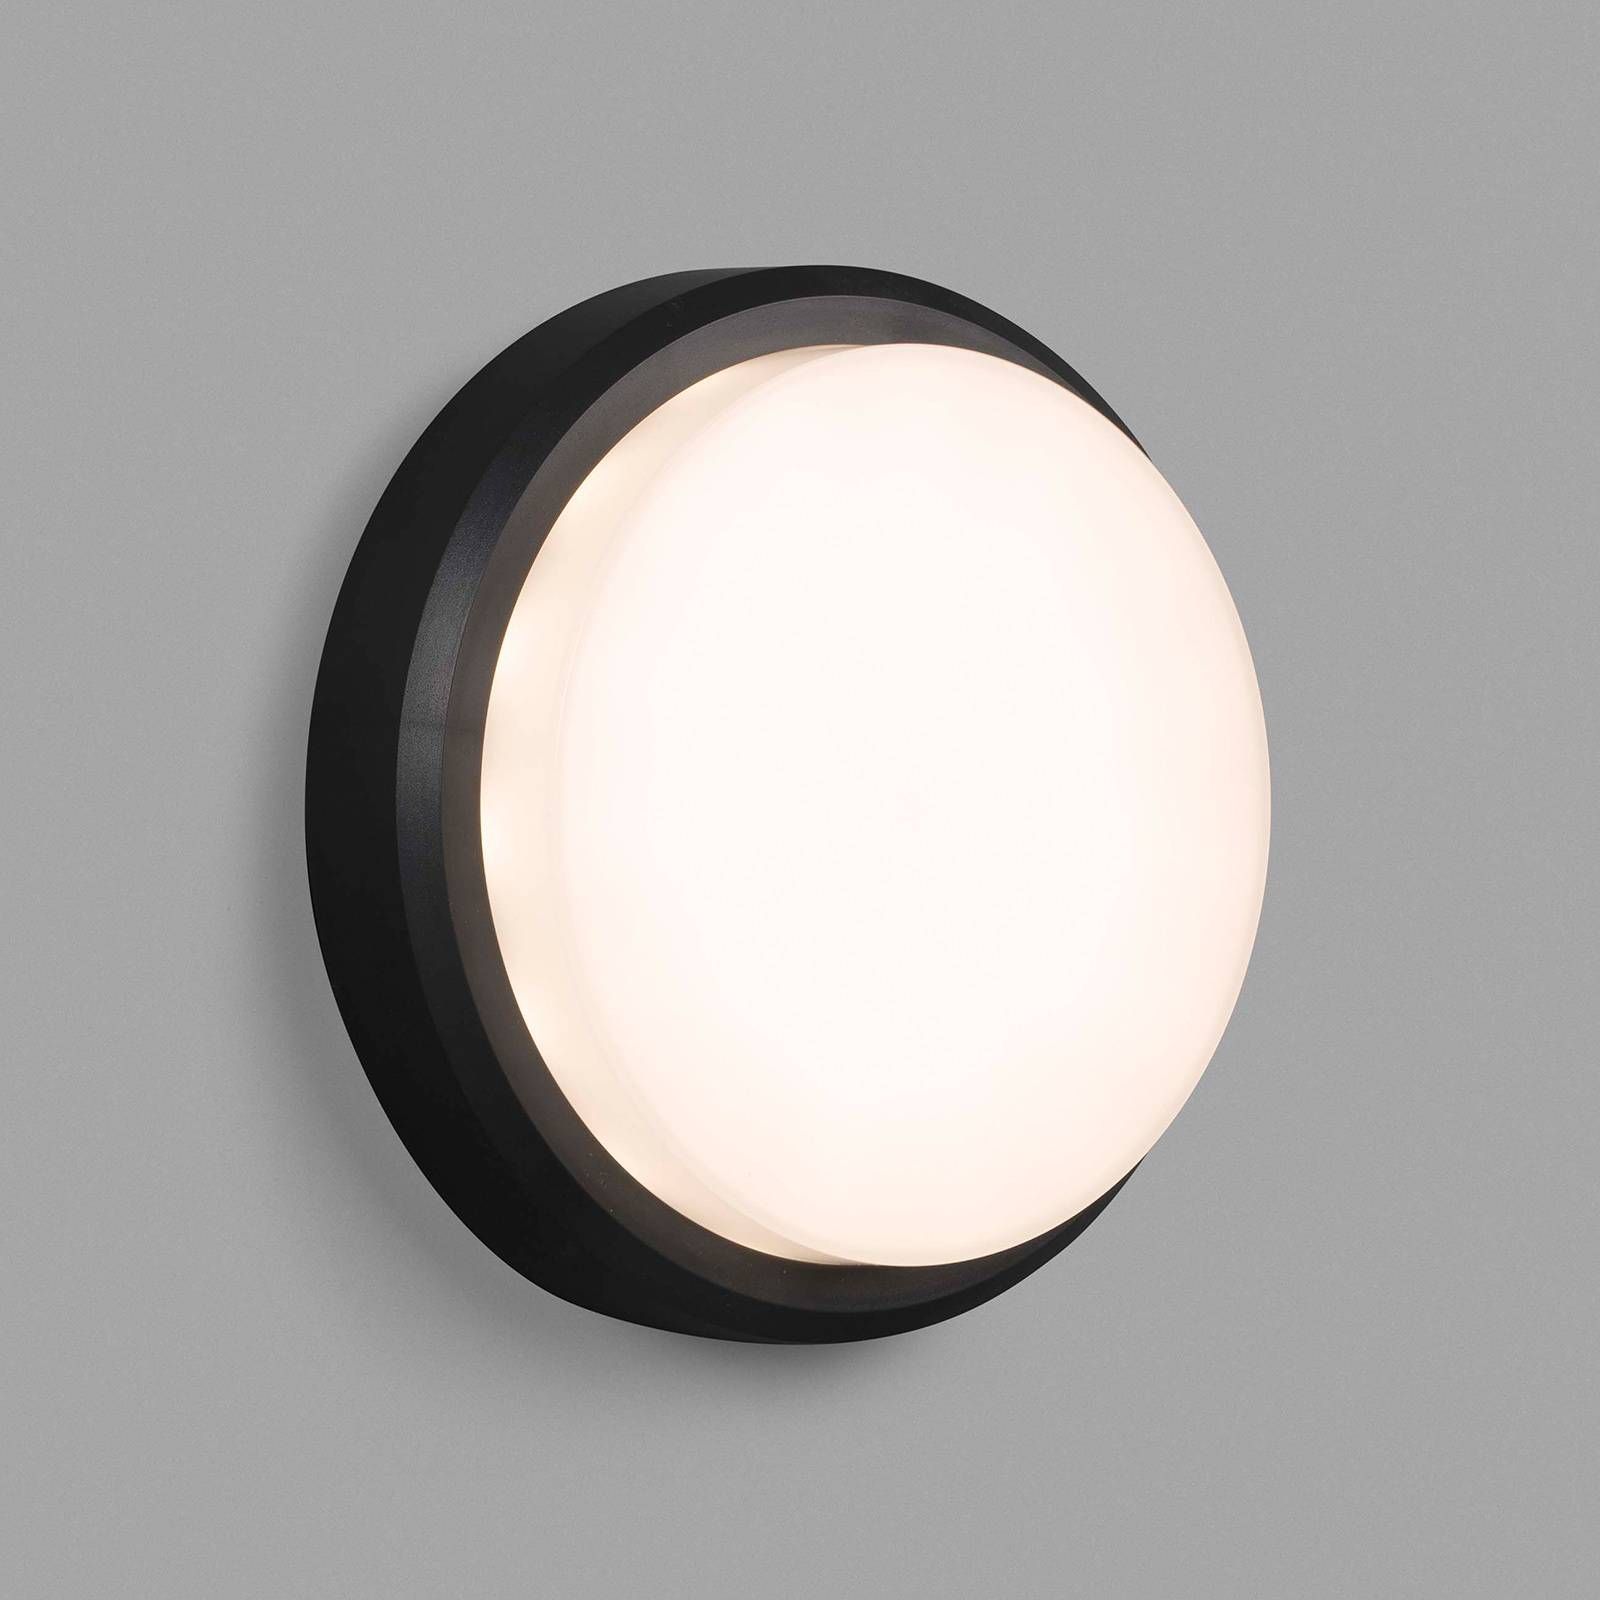 FARO BARCELONA Vonkajšie nástenné LED svetlo Tom XL IK10, sivé, polykarbonát, ABS plast, 11W